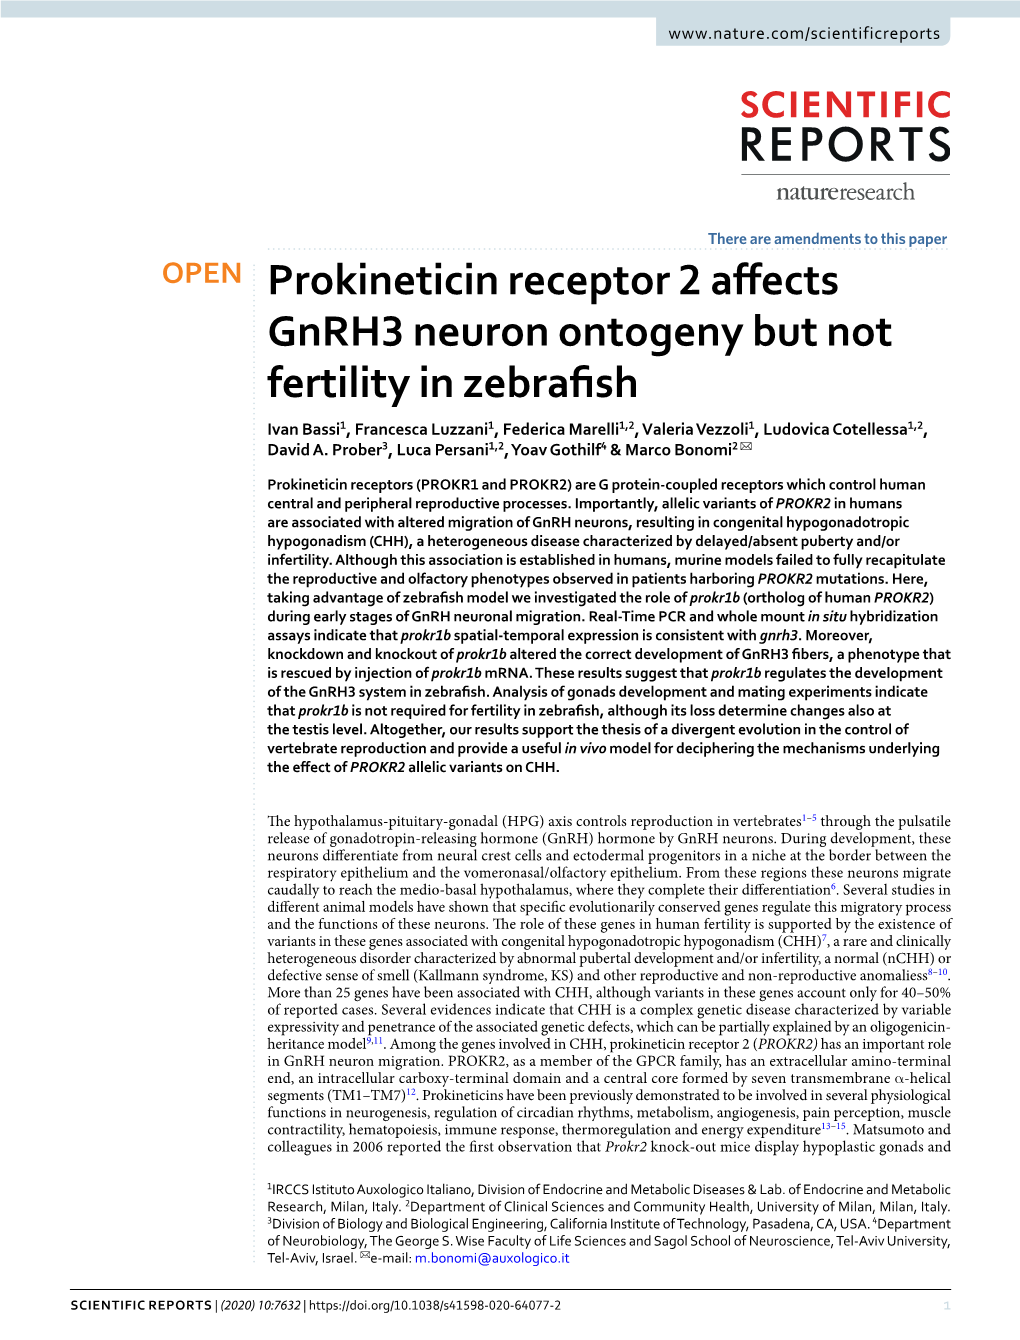 Prokineticin Receptor 2 Affects Gnrh3 Neuron Ontogeny but Not Fertility In